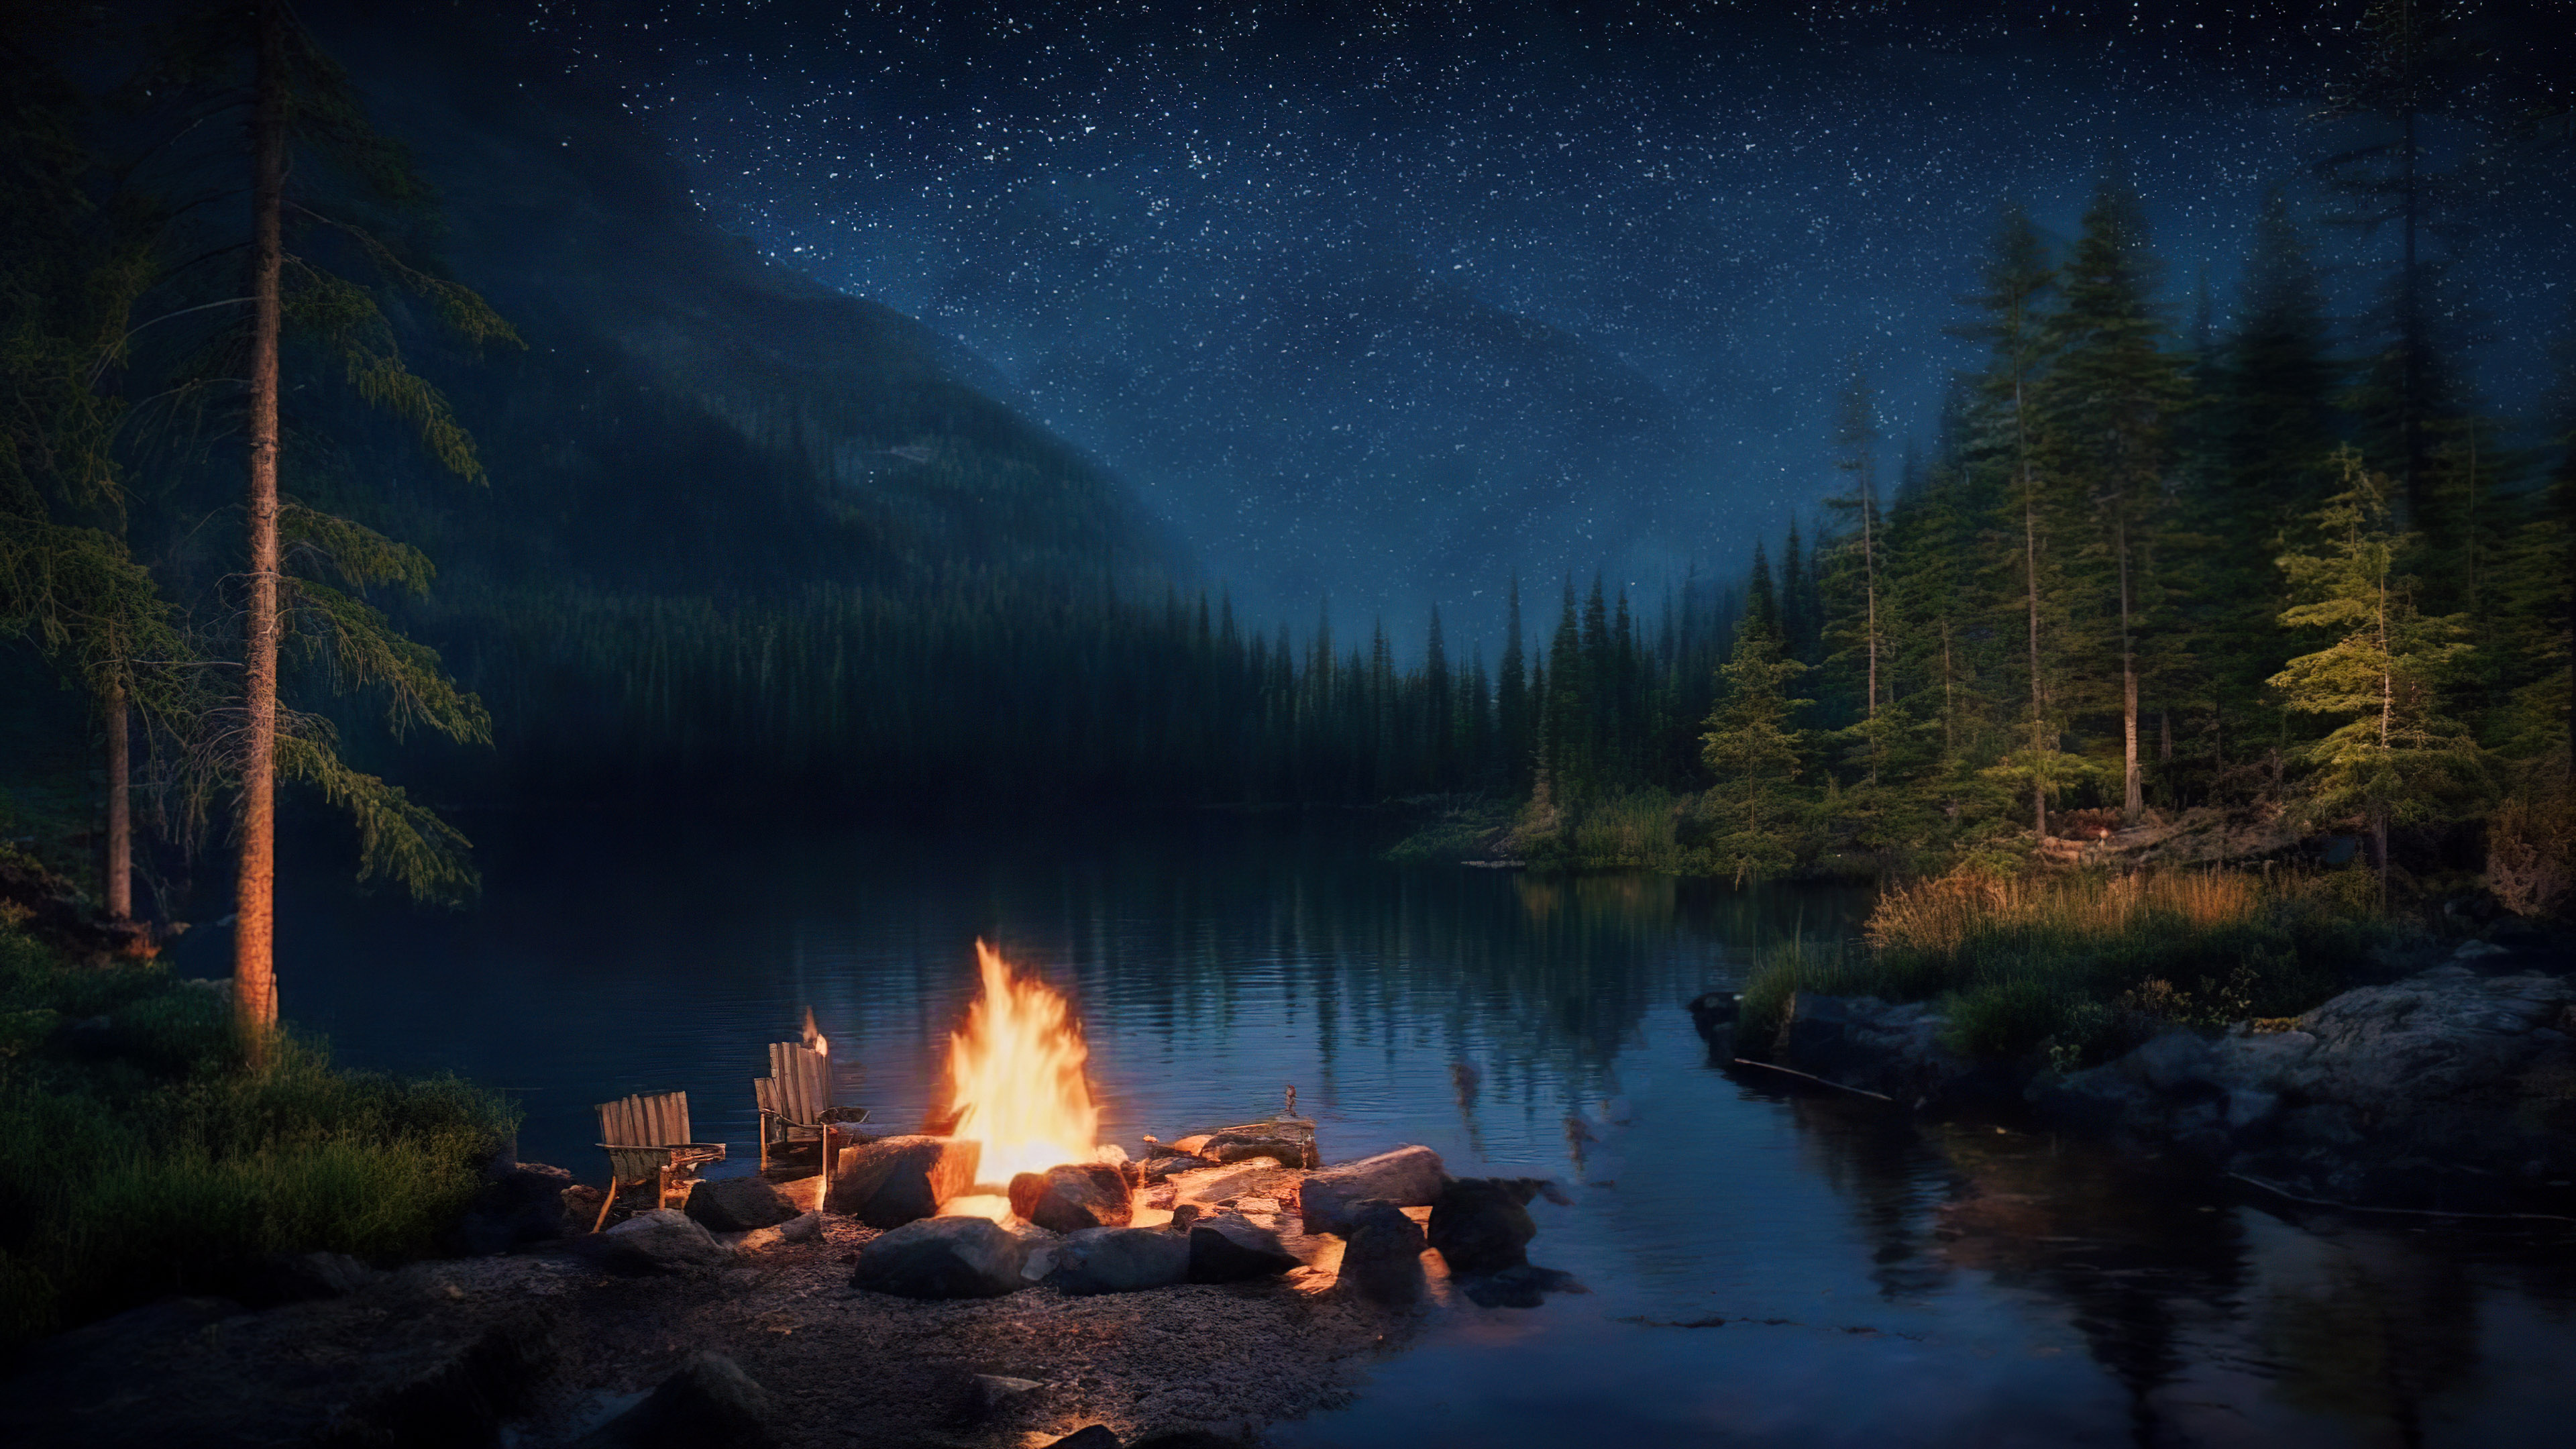 Vivez la sérénité de notre fond d'écran de nuit esthétique, présentant un campement au bord d'un lac serein avec un feu de camp vacillant, entouré d'une forêt sombre et boisée.